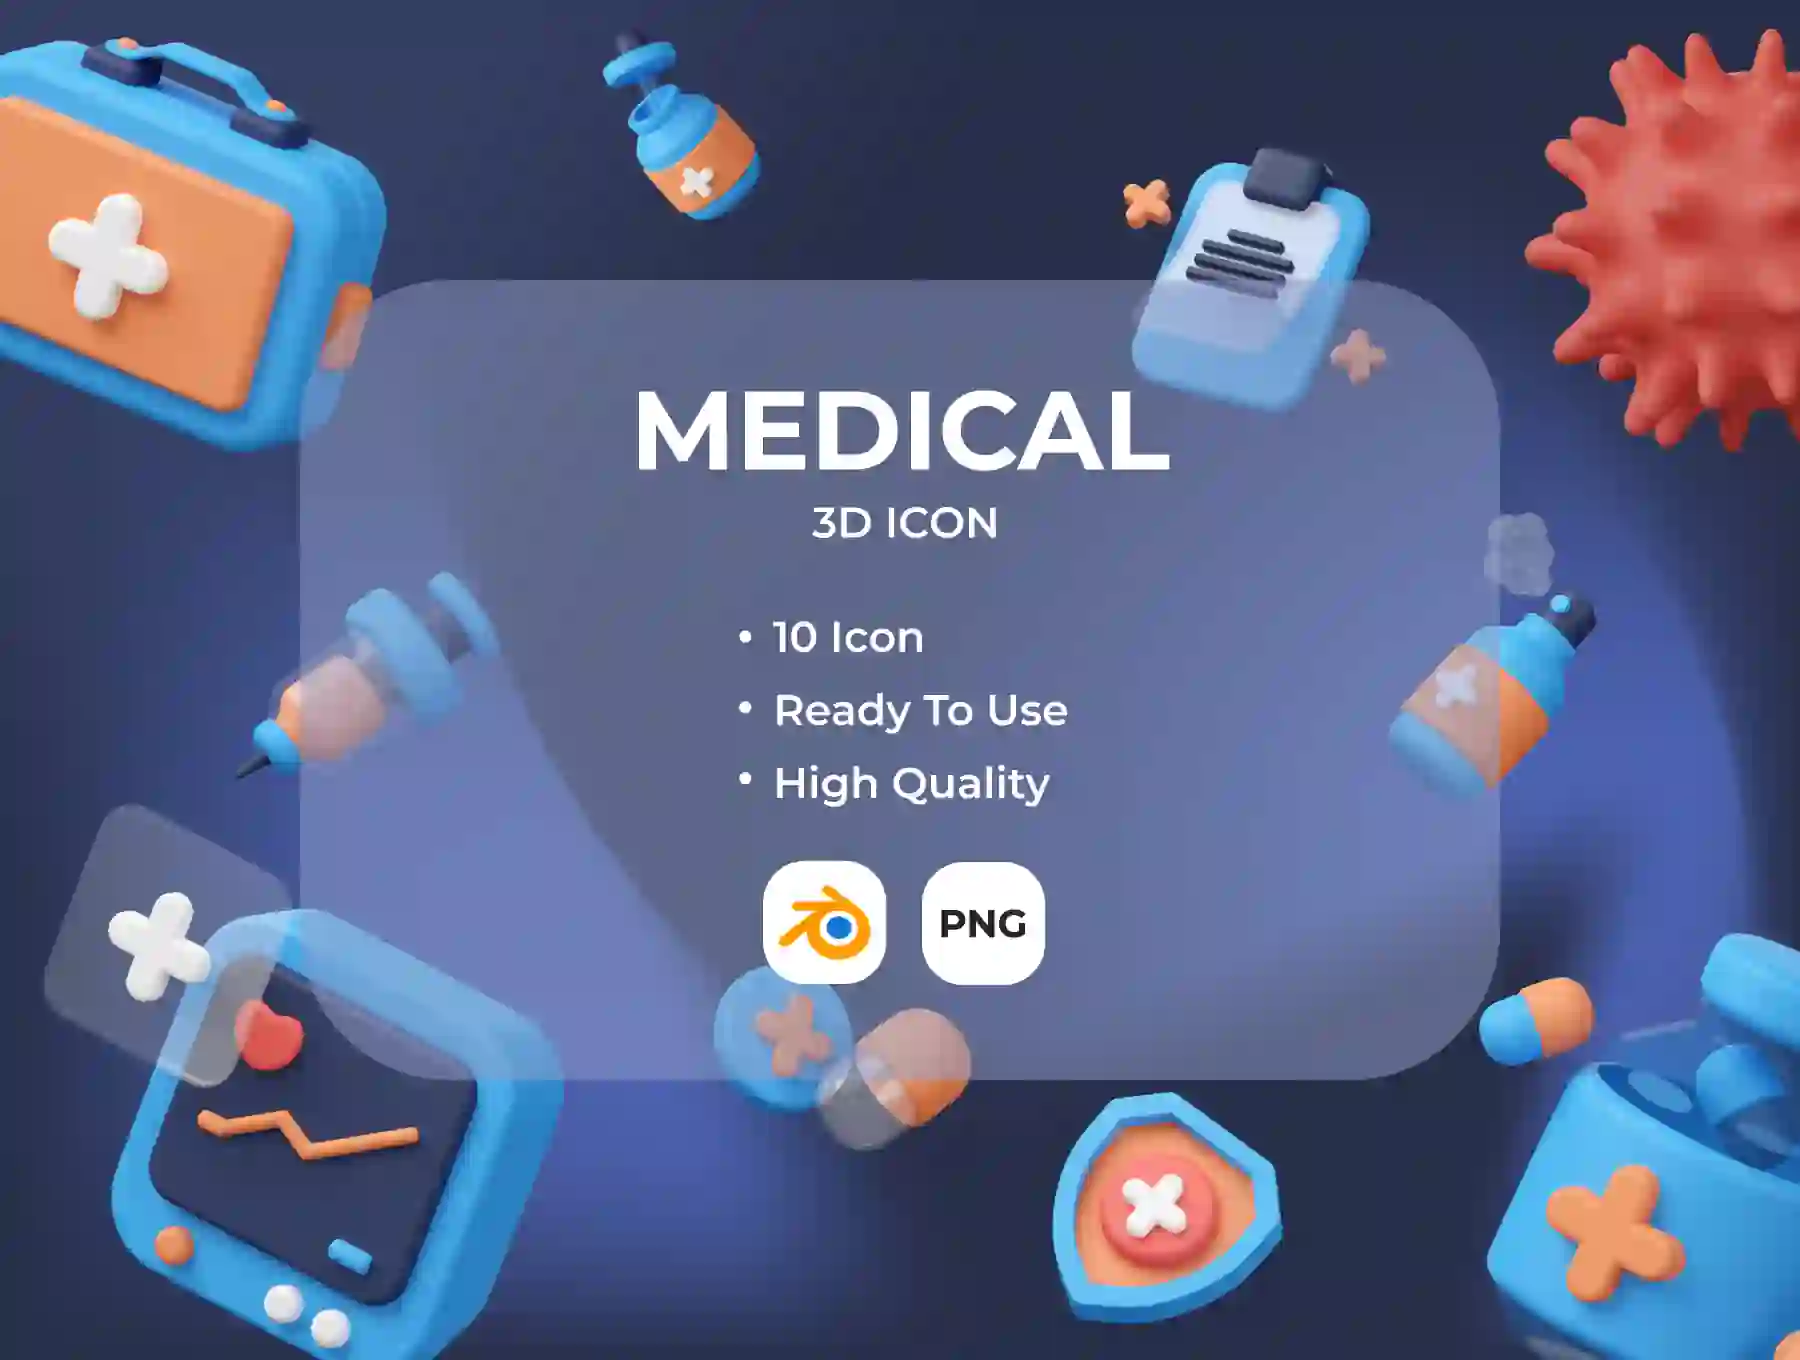 Medical 3D Illustration set